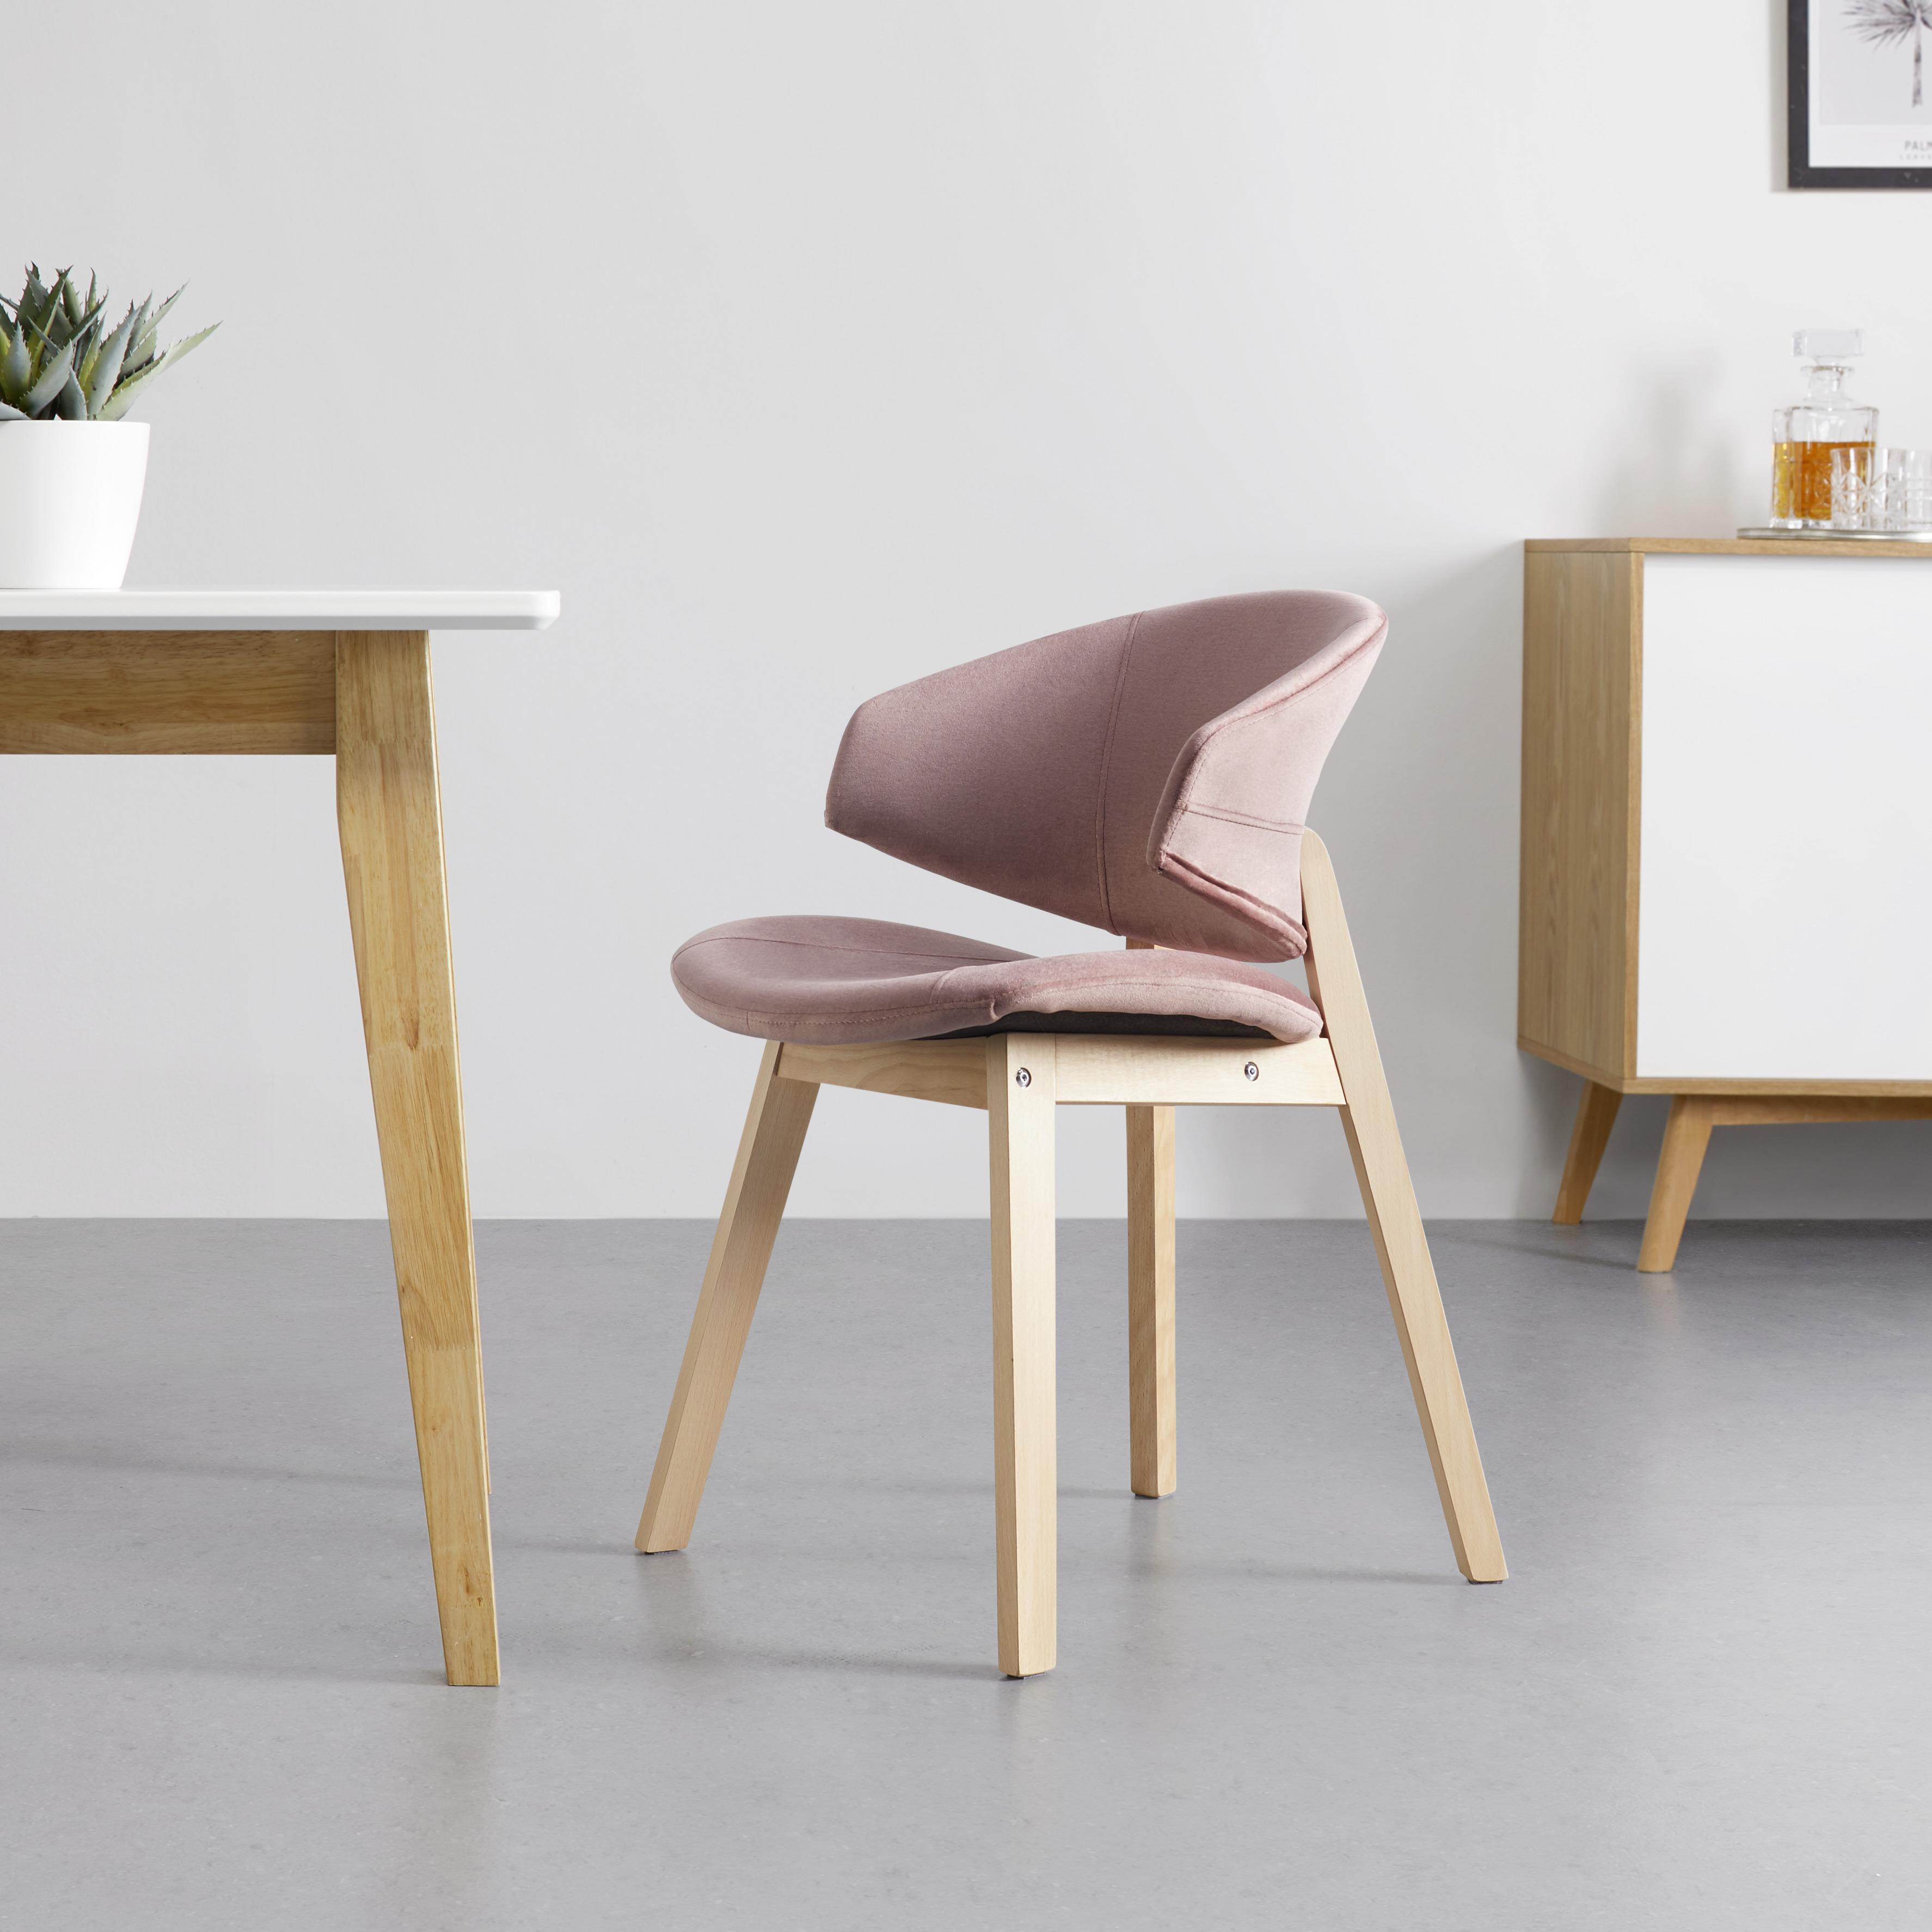 Jídelní Židle Nora - růžová/barvy buku, Moderní, dřevo/textil (52/78/55cm) - Modern Living